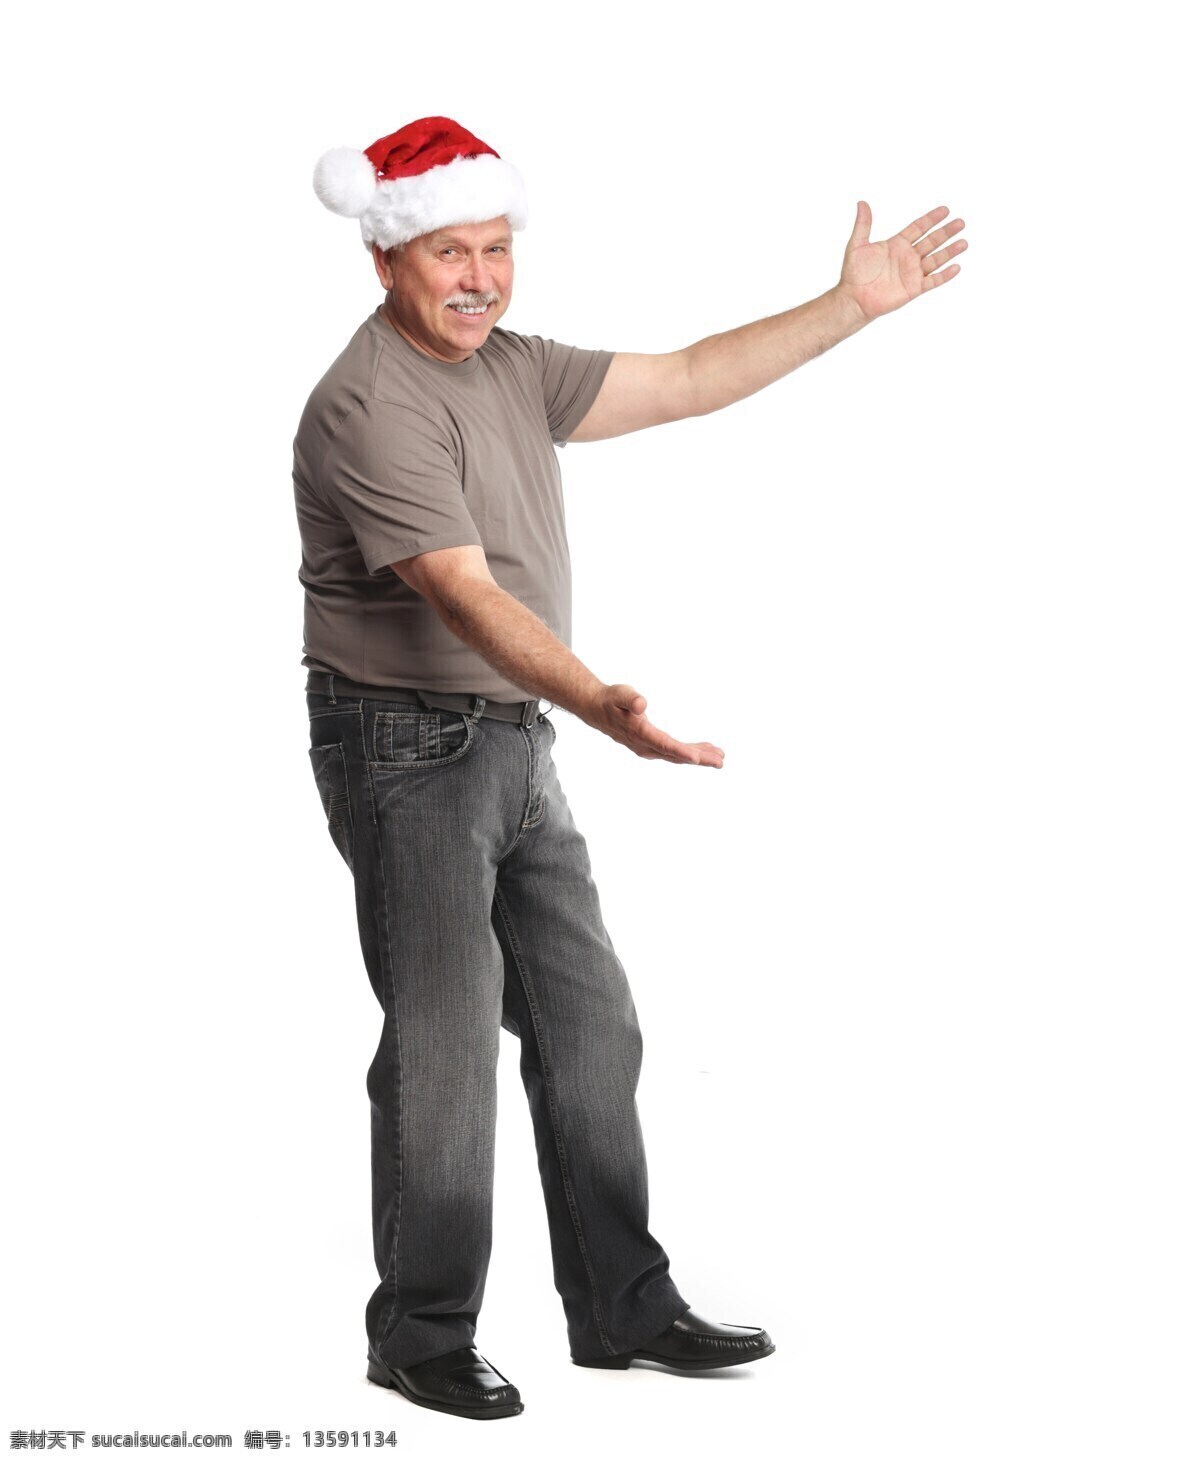 戴 圣诞 帽子 伸出 双手 男人 戴着圣诞帽子 伸出双手 微笑 外国人 圣诞节 节日 生活人物 人物图片